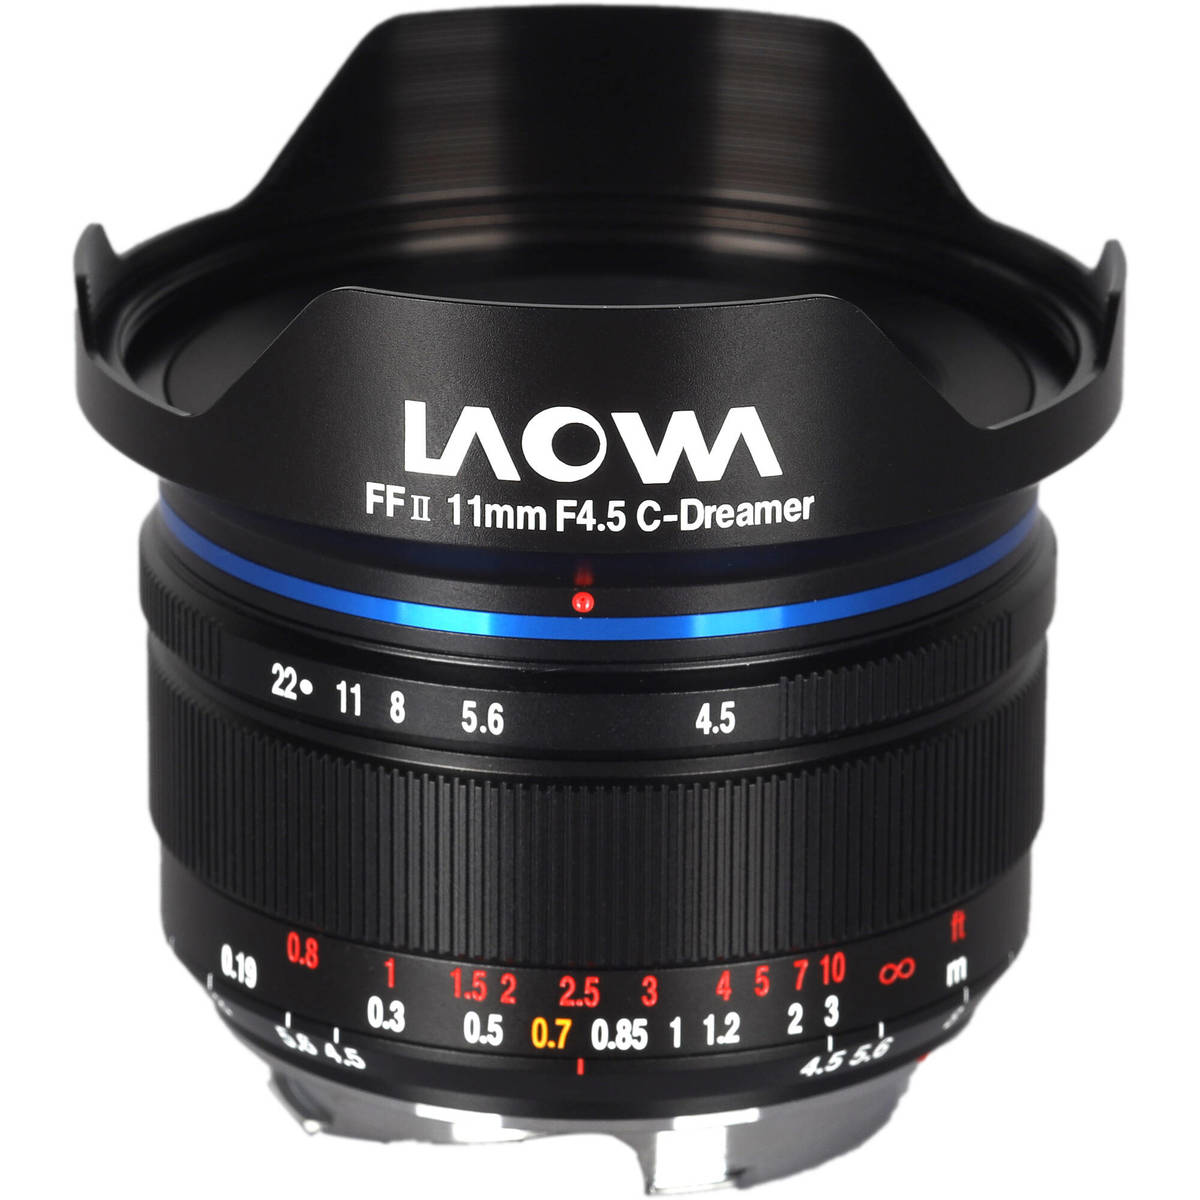 2. Laowa Lens 11mm f/4.5 FF RL (Leica M) Black